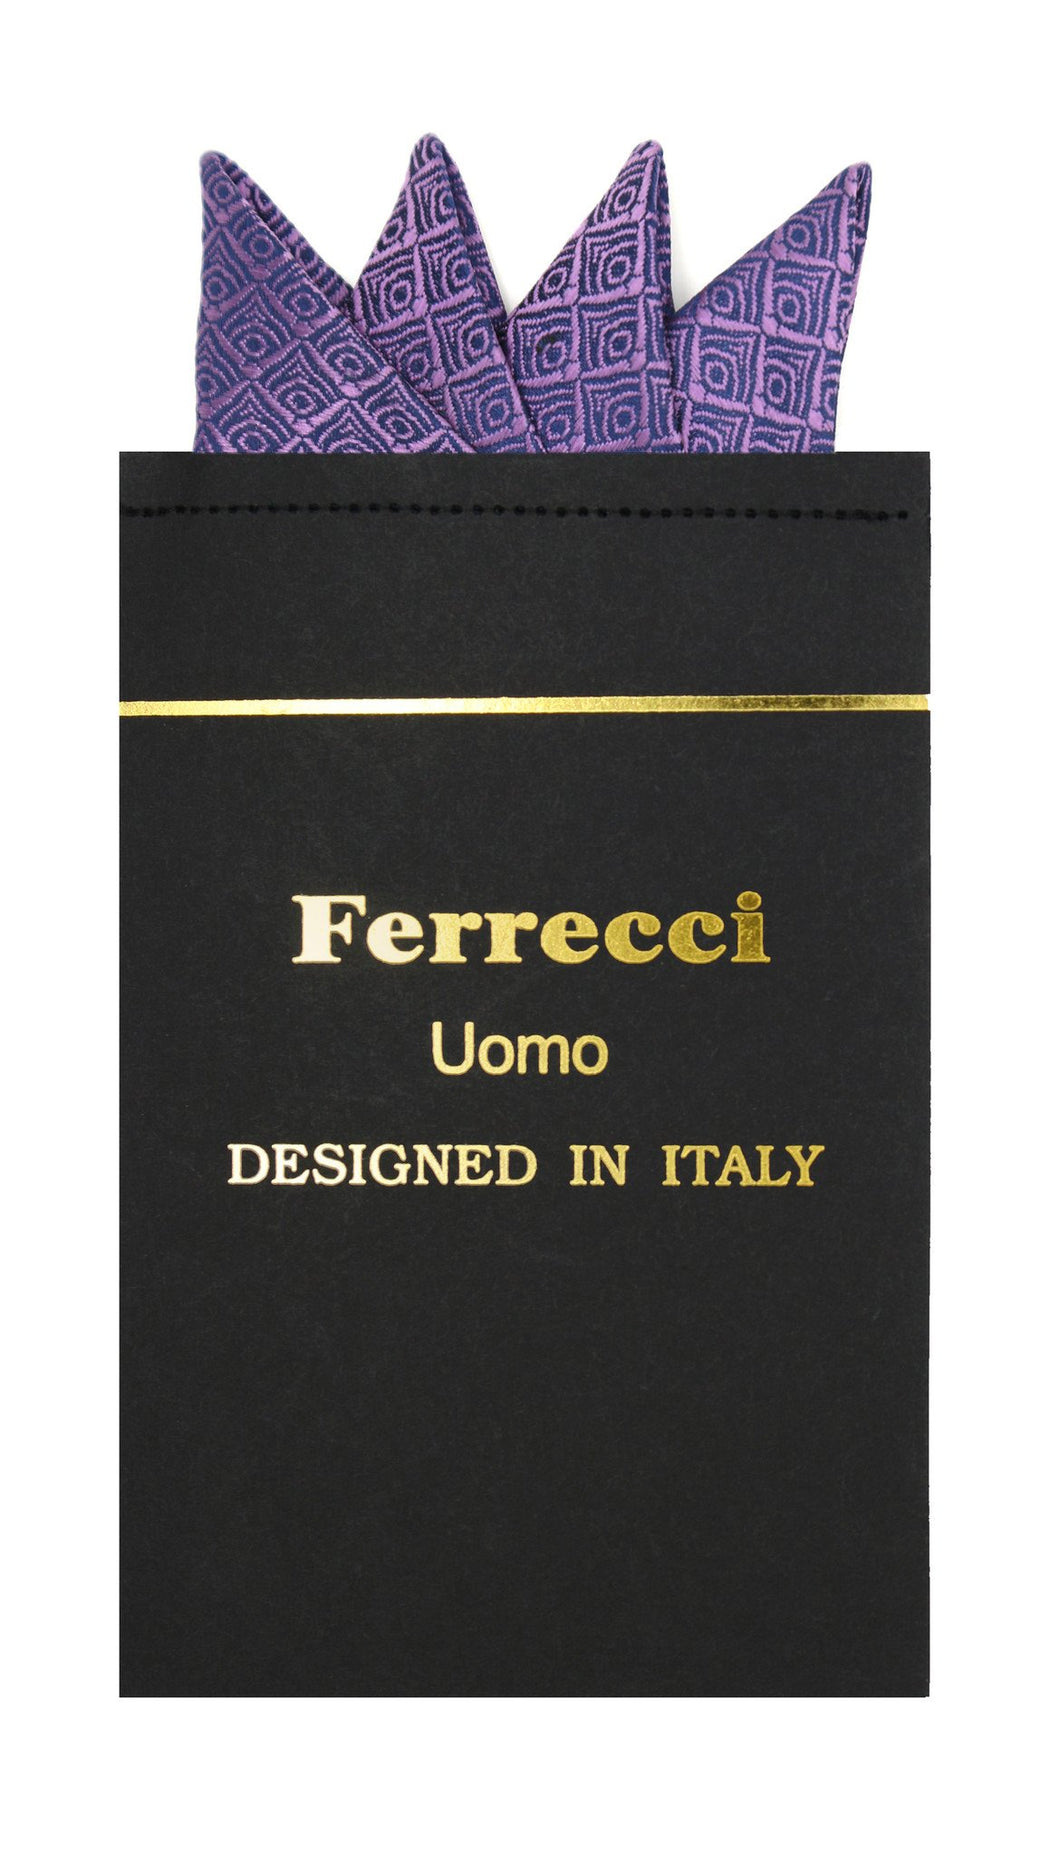 Pre-Folded Microfiber Lavender Geometric Handkerchief Pocket Square - Ferrecci USA 